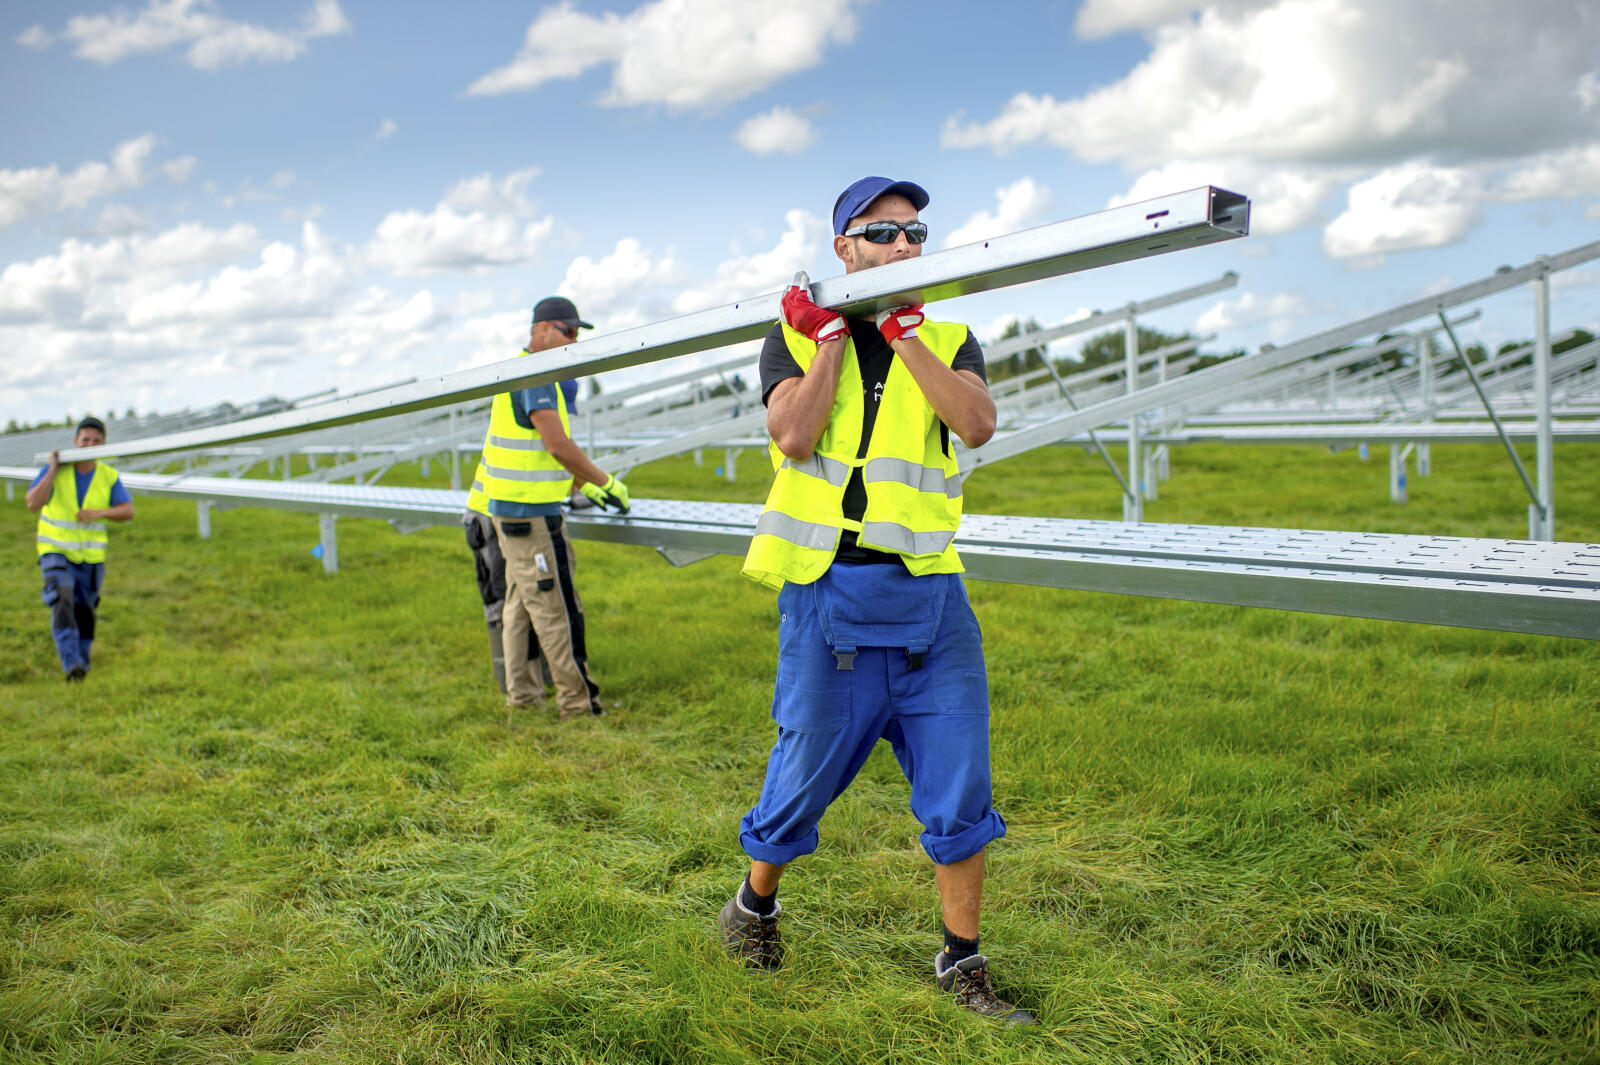 Installateurs zijn druk bezig met het aanleggen van een zonnepanelenpark naast industrieterrein De Swadde in Buitenpost